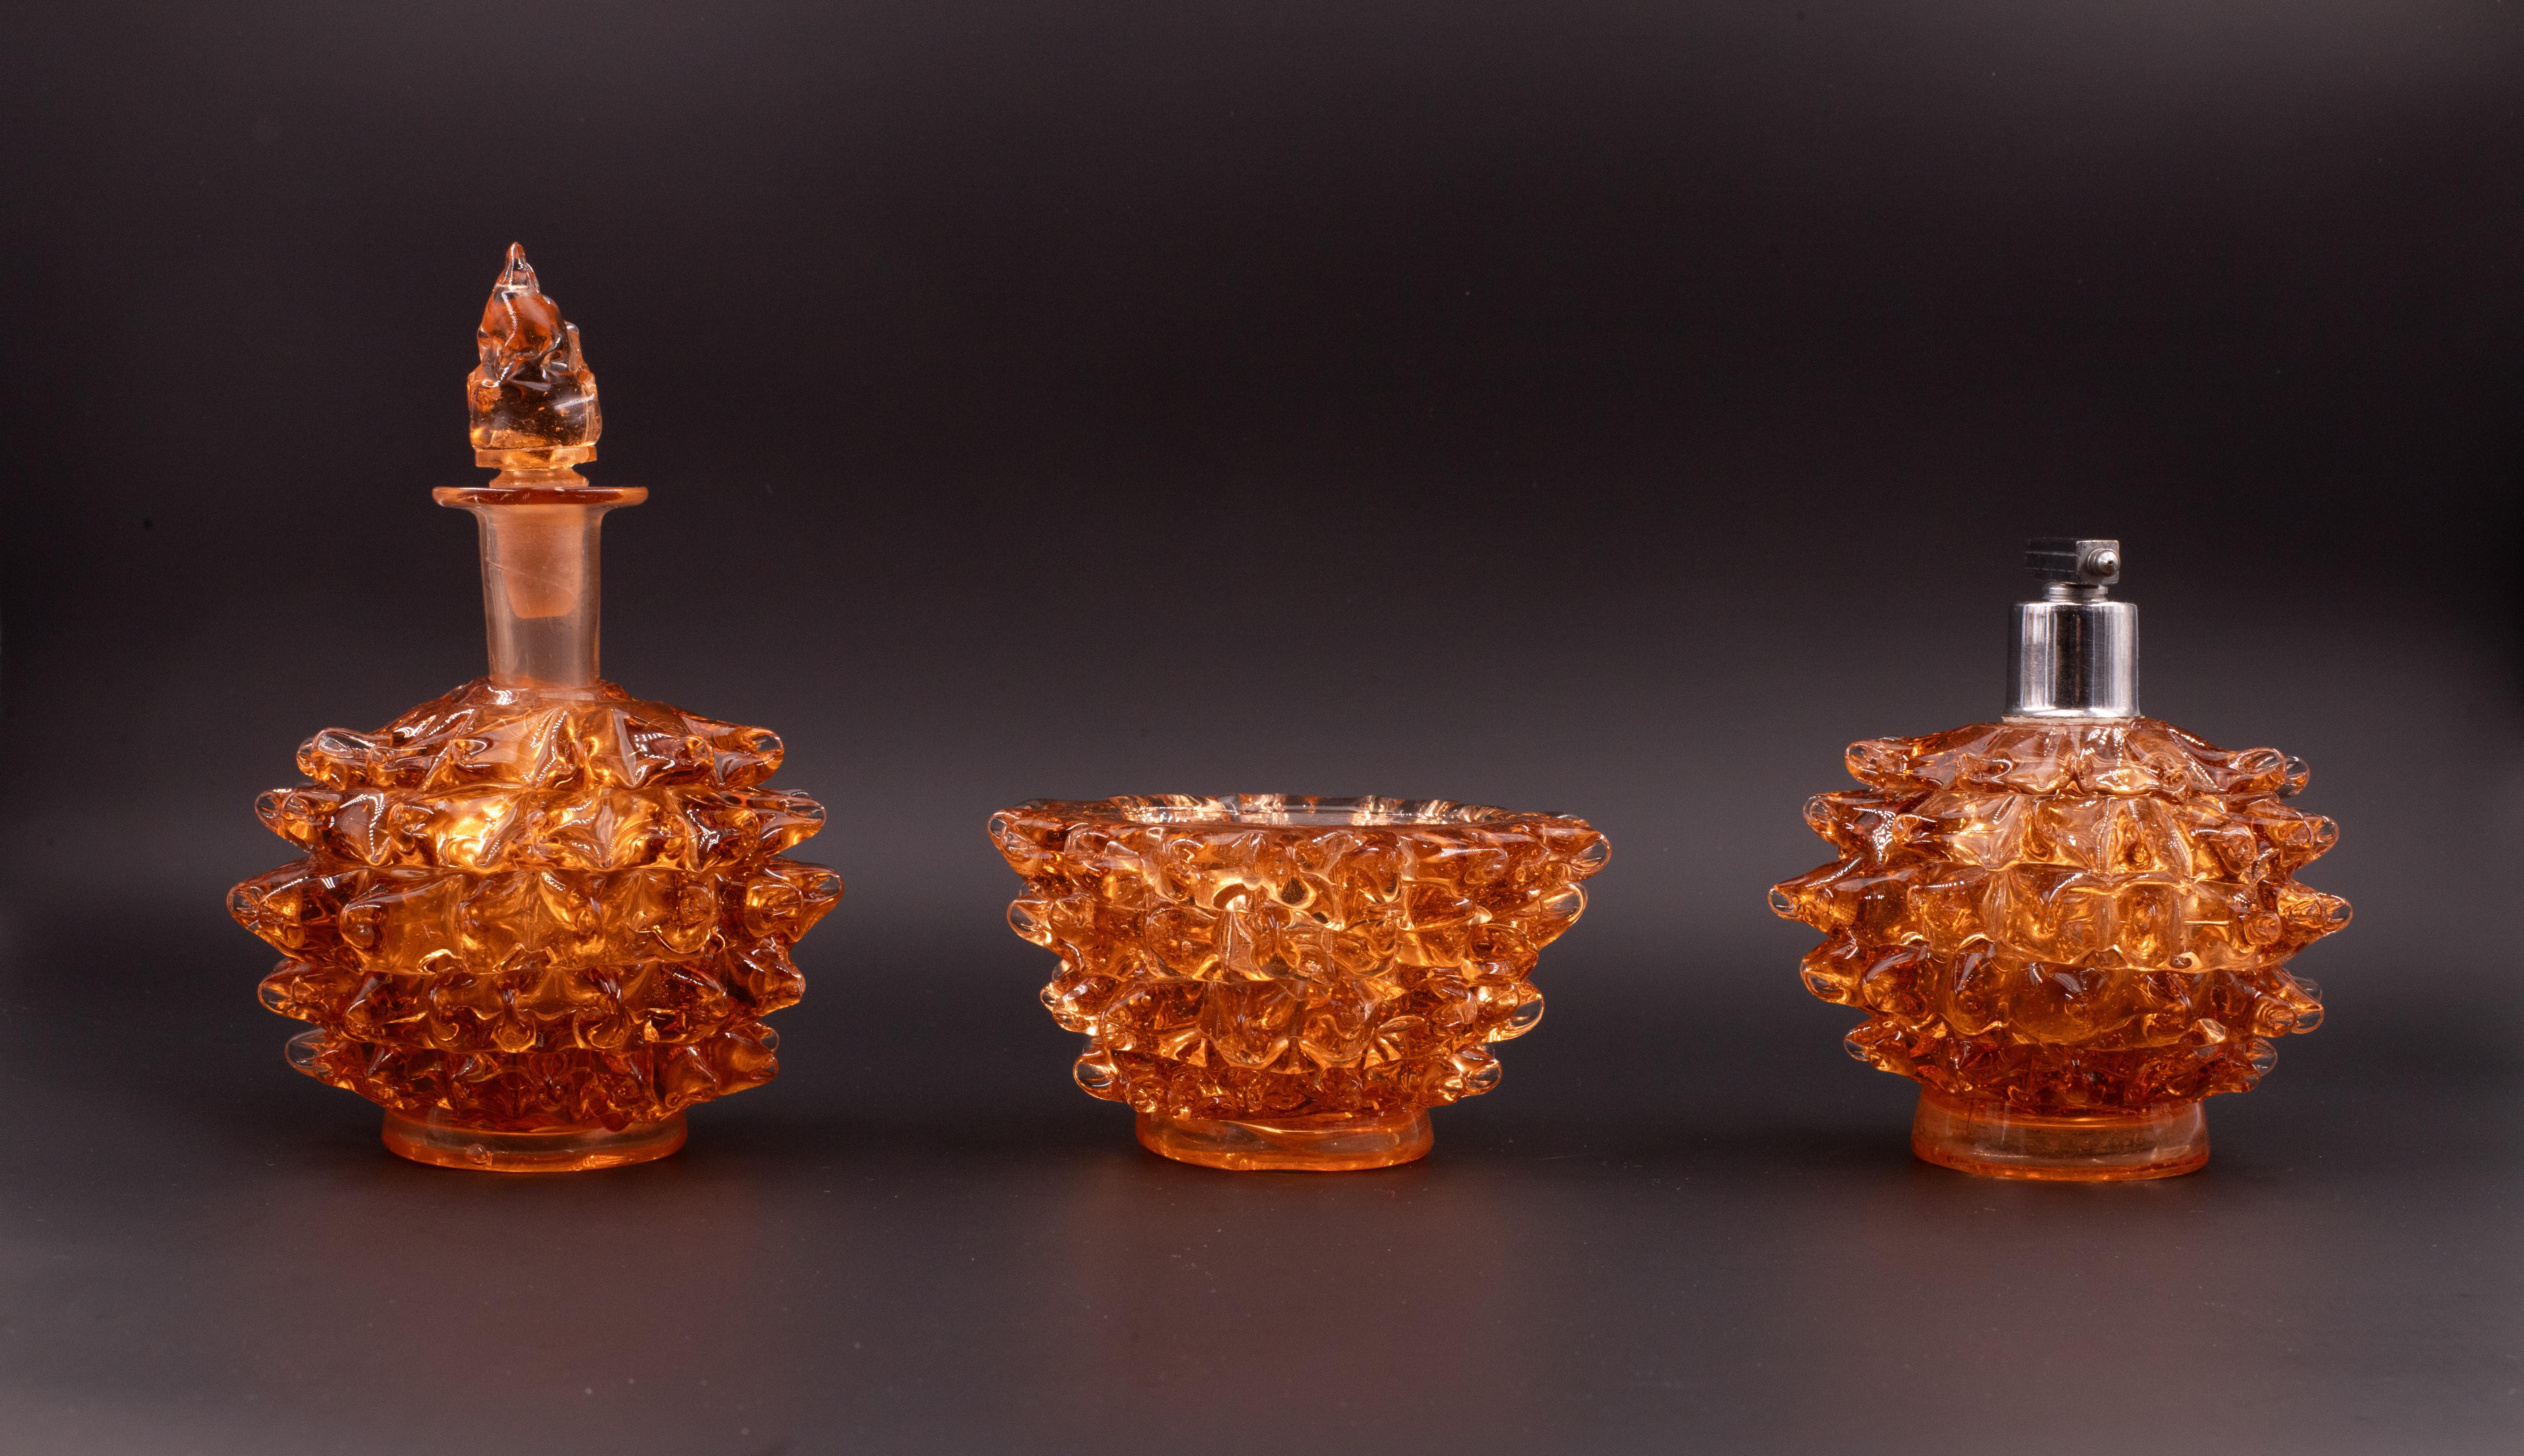 Incroyable ensemble de 3 vases en verre de Murano dans un rare rostrato ambré du milieu du siècle. Ce bel objet a été produit dans les années 1940 en Italie par Ercole Barovier pour Barovier&Toso. 
Ce chef-d'œuvre est un hommage fantastique à